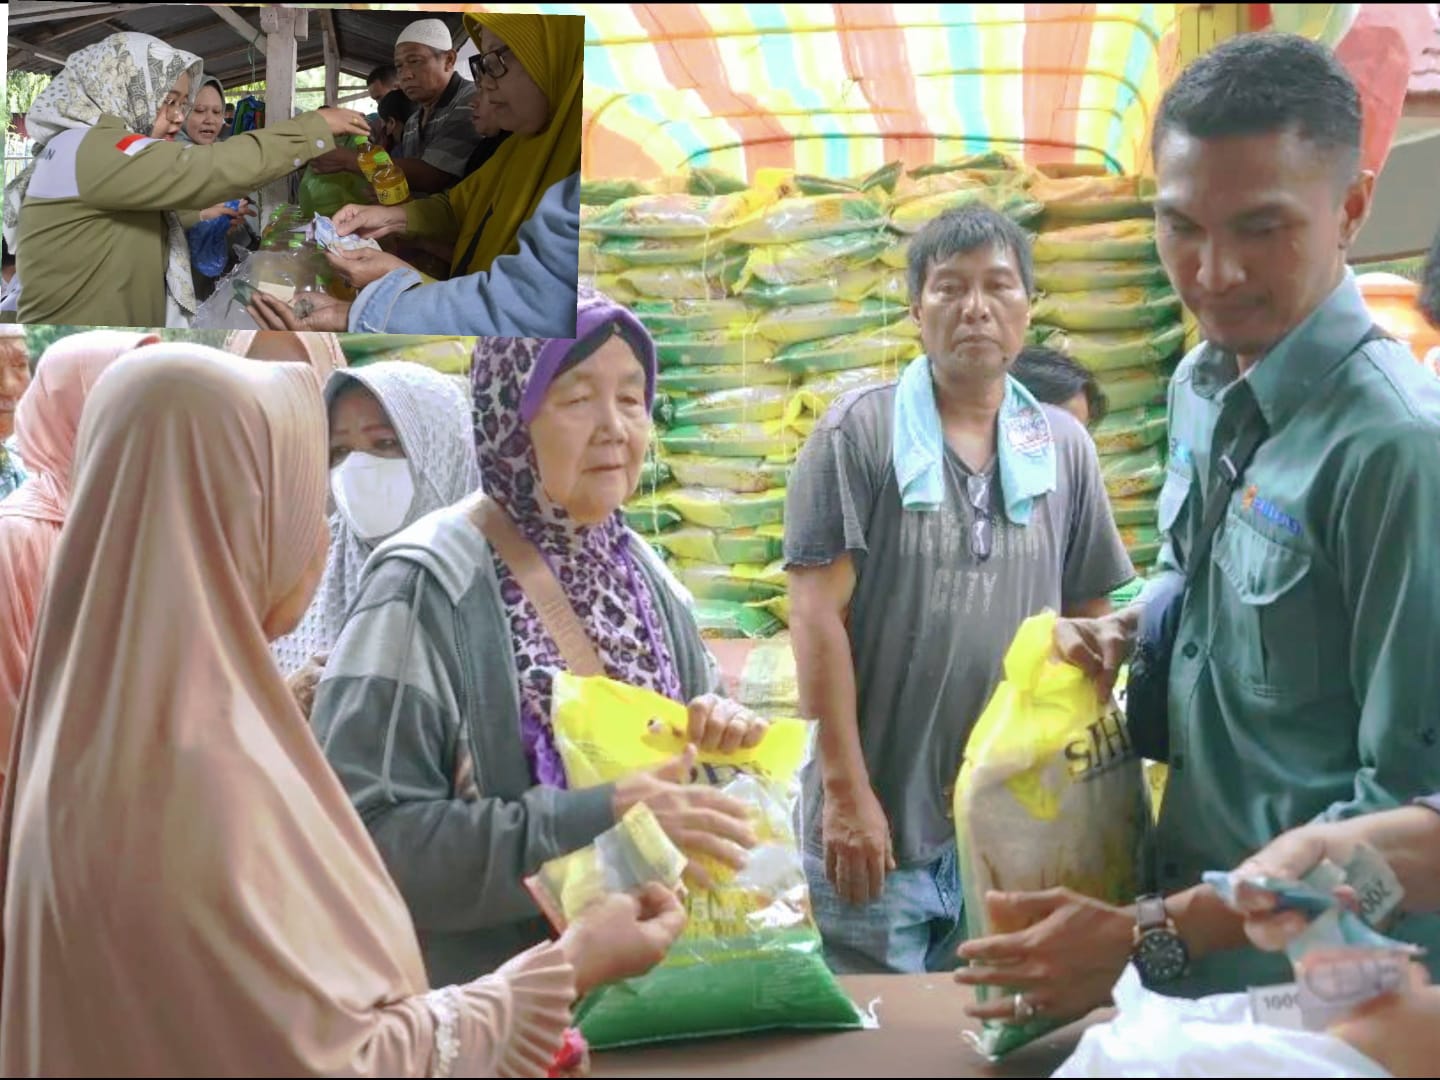 7 Ton Beras Ludes Diserbu Warga Kecamatan Prabumulih Timur 